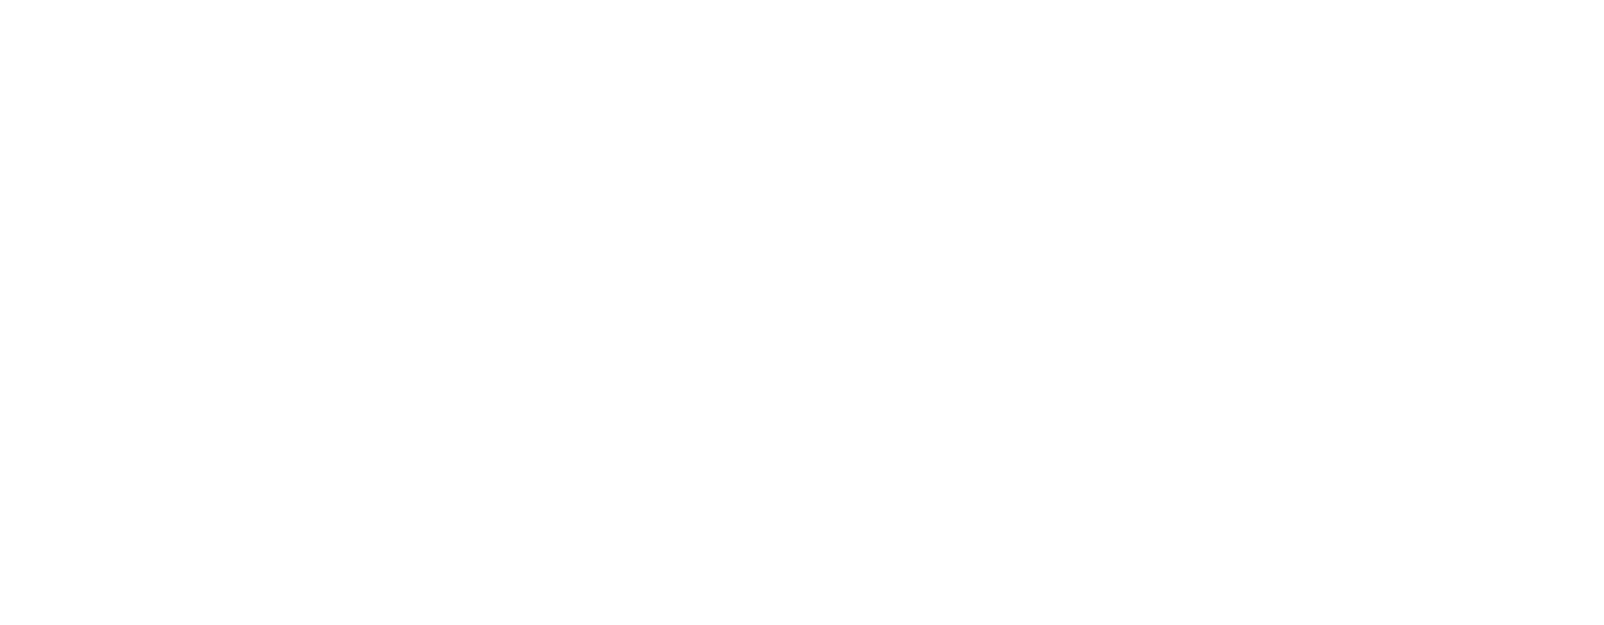 HFPA Online Learning Platform